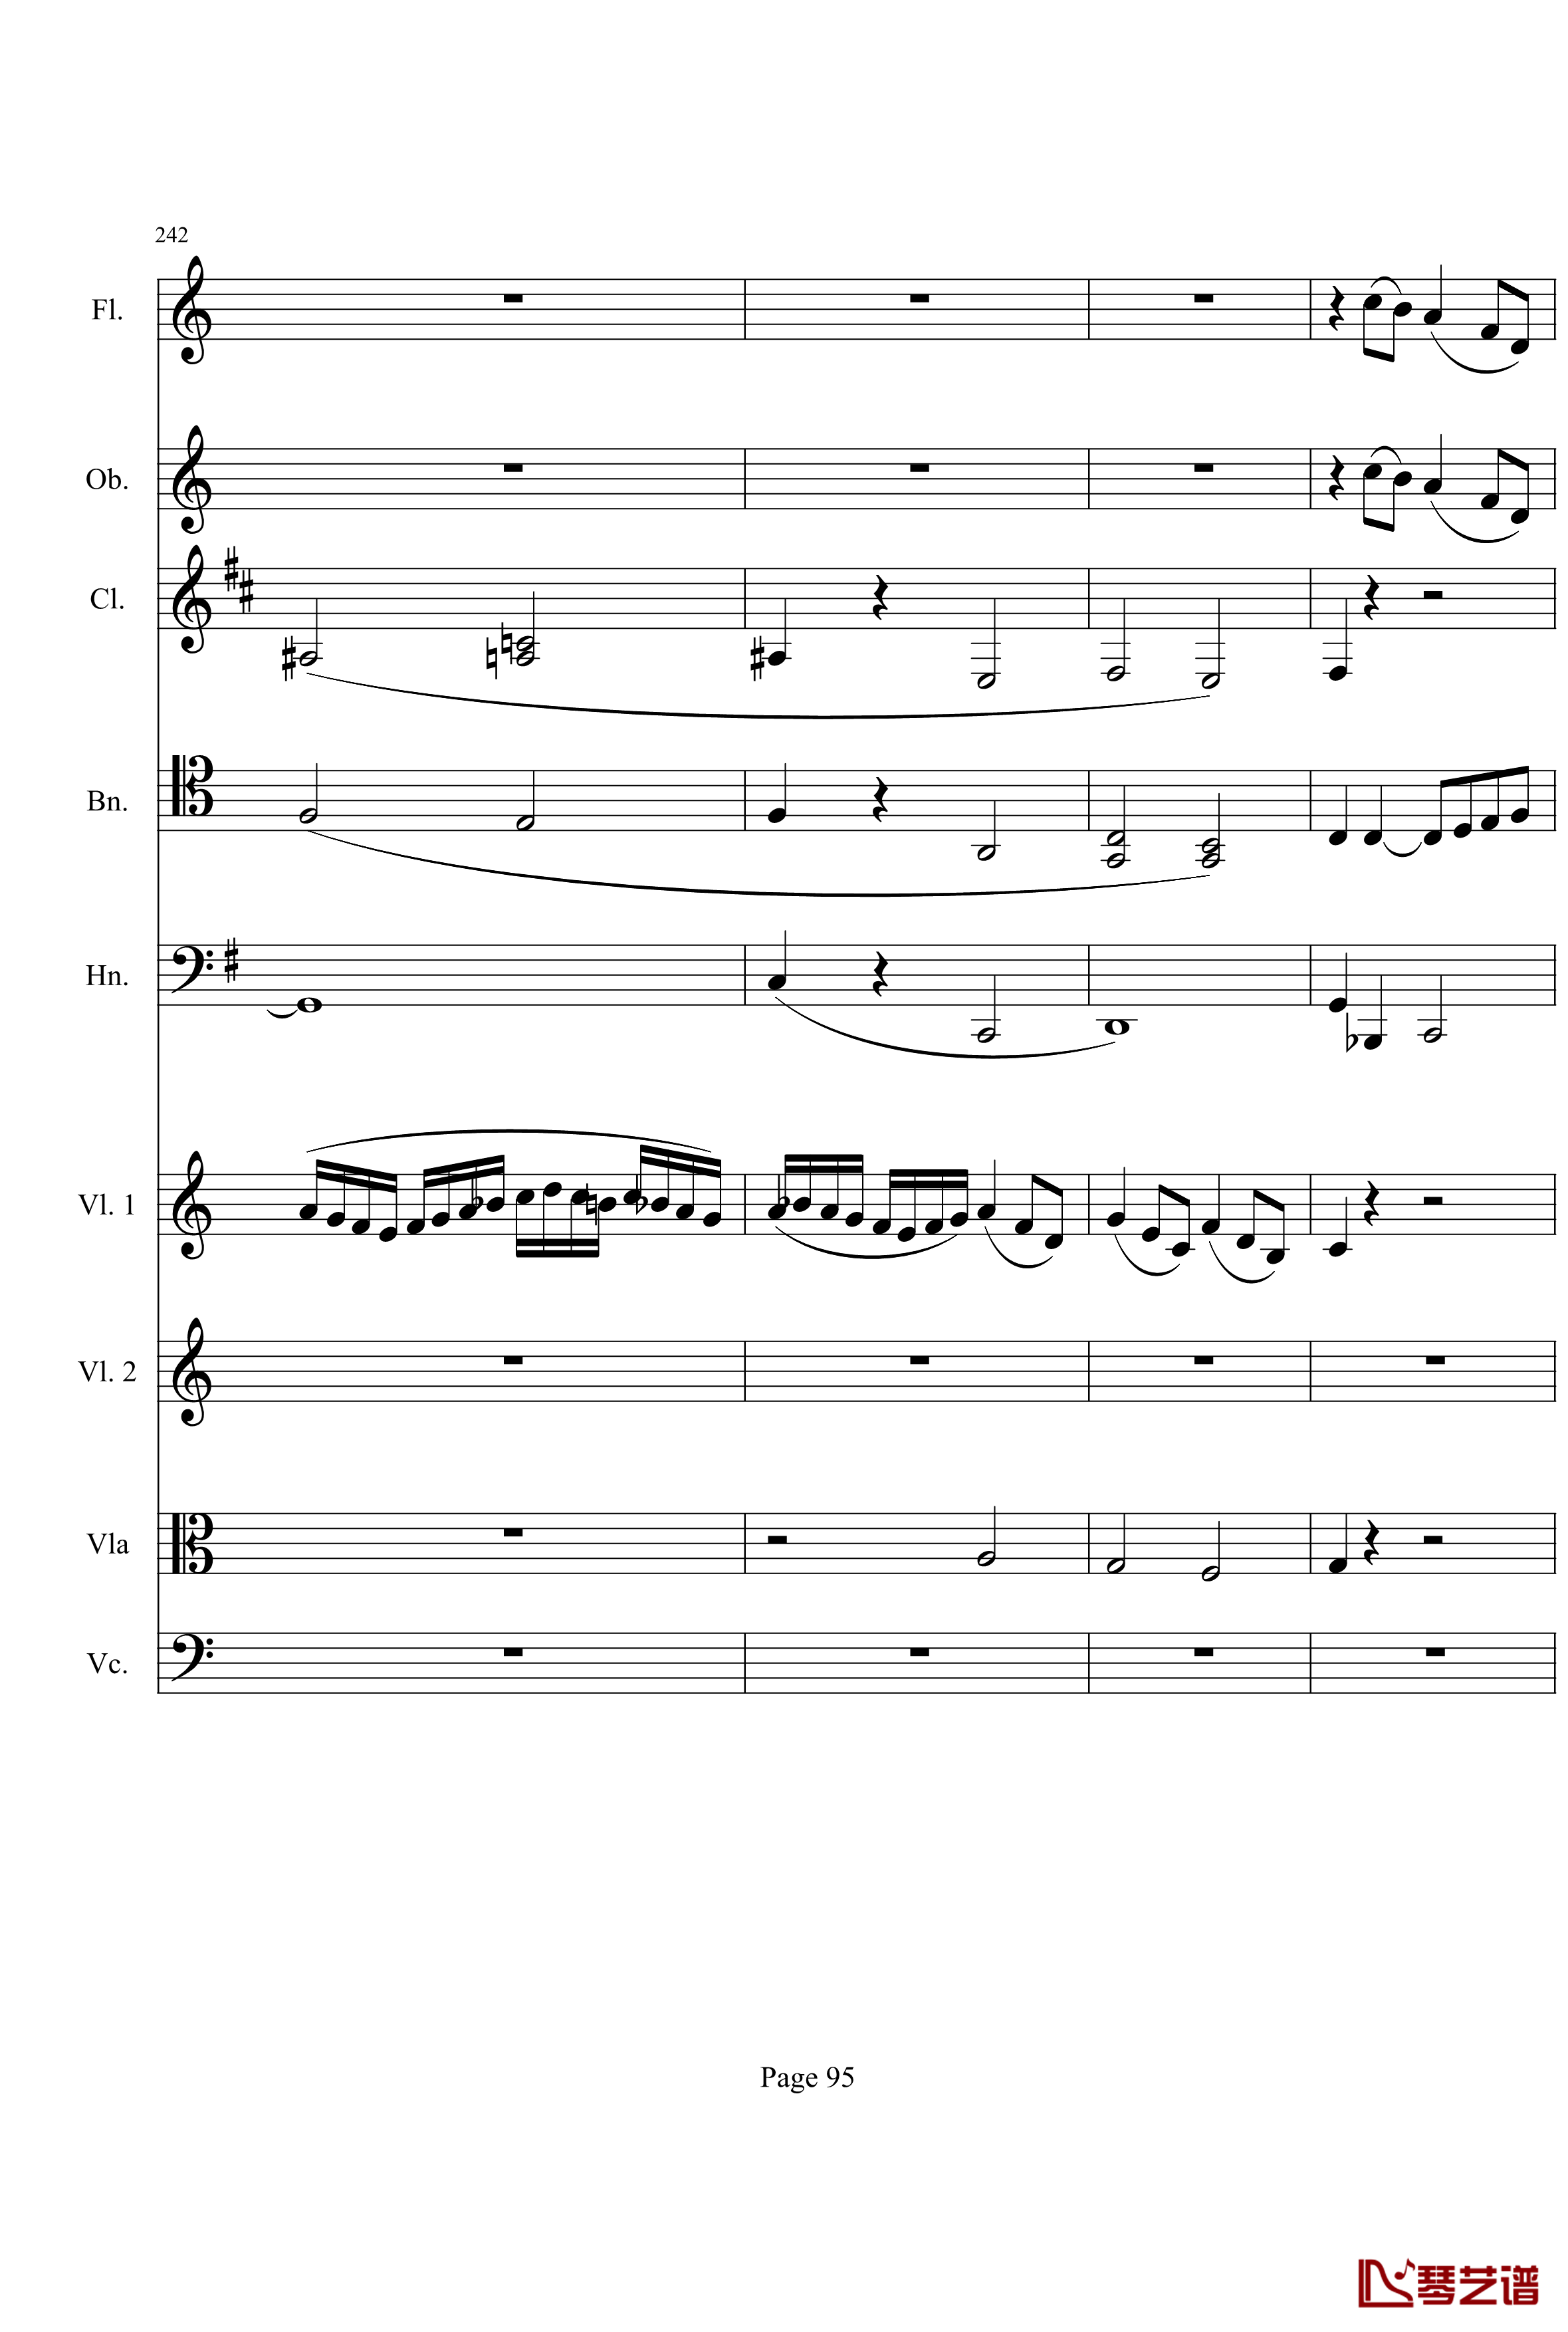 奏鸣曲之交响钢琴谱-第21-Ⅰ-贝多芬-beethoven95